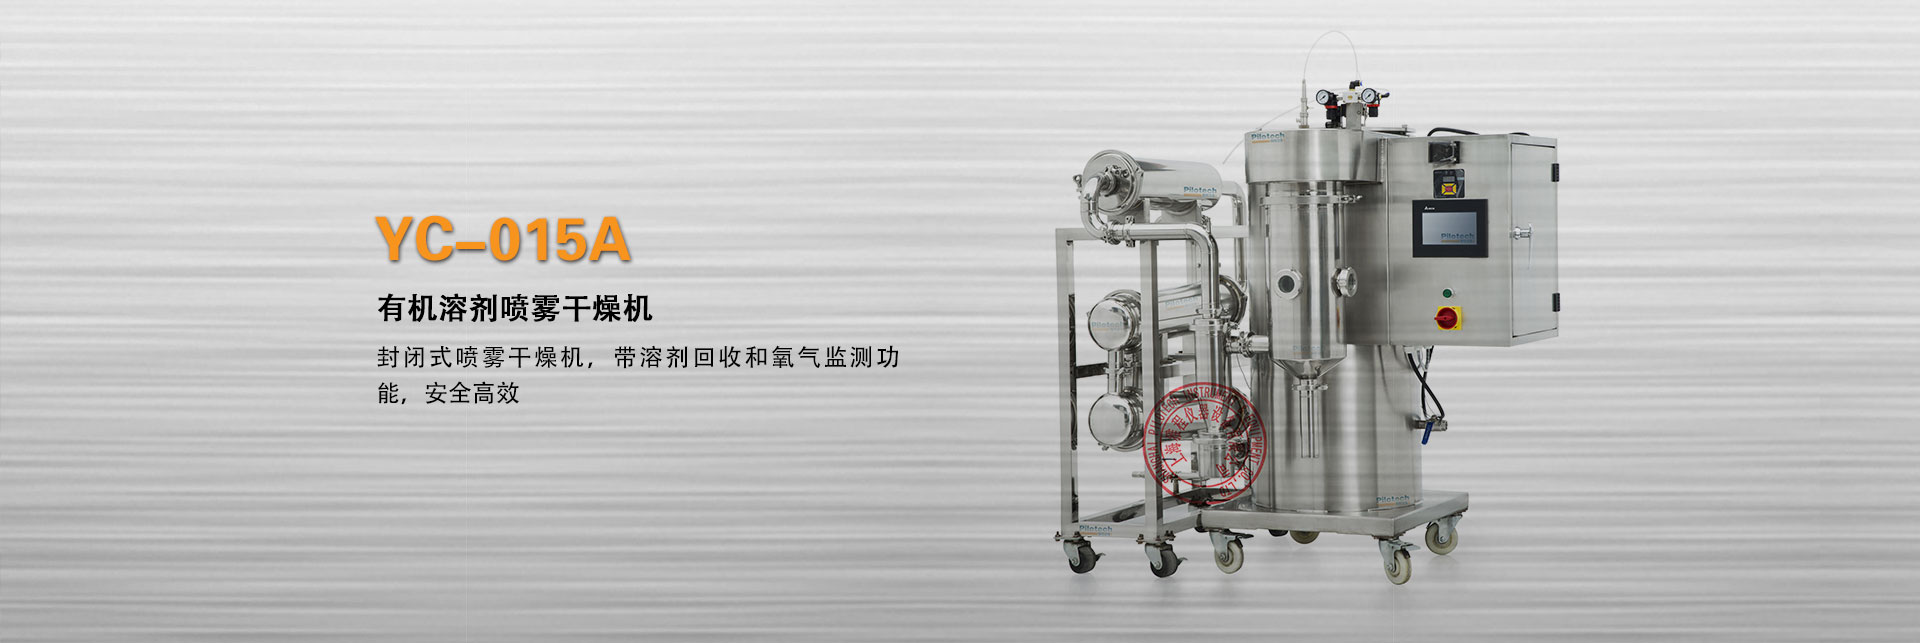 上海球盟会YC-015A封闭式有机溶剂喷雾干燥机